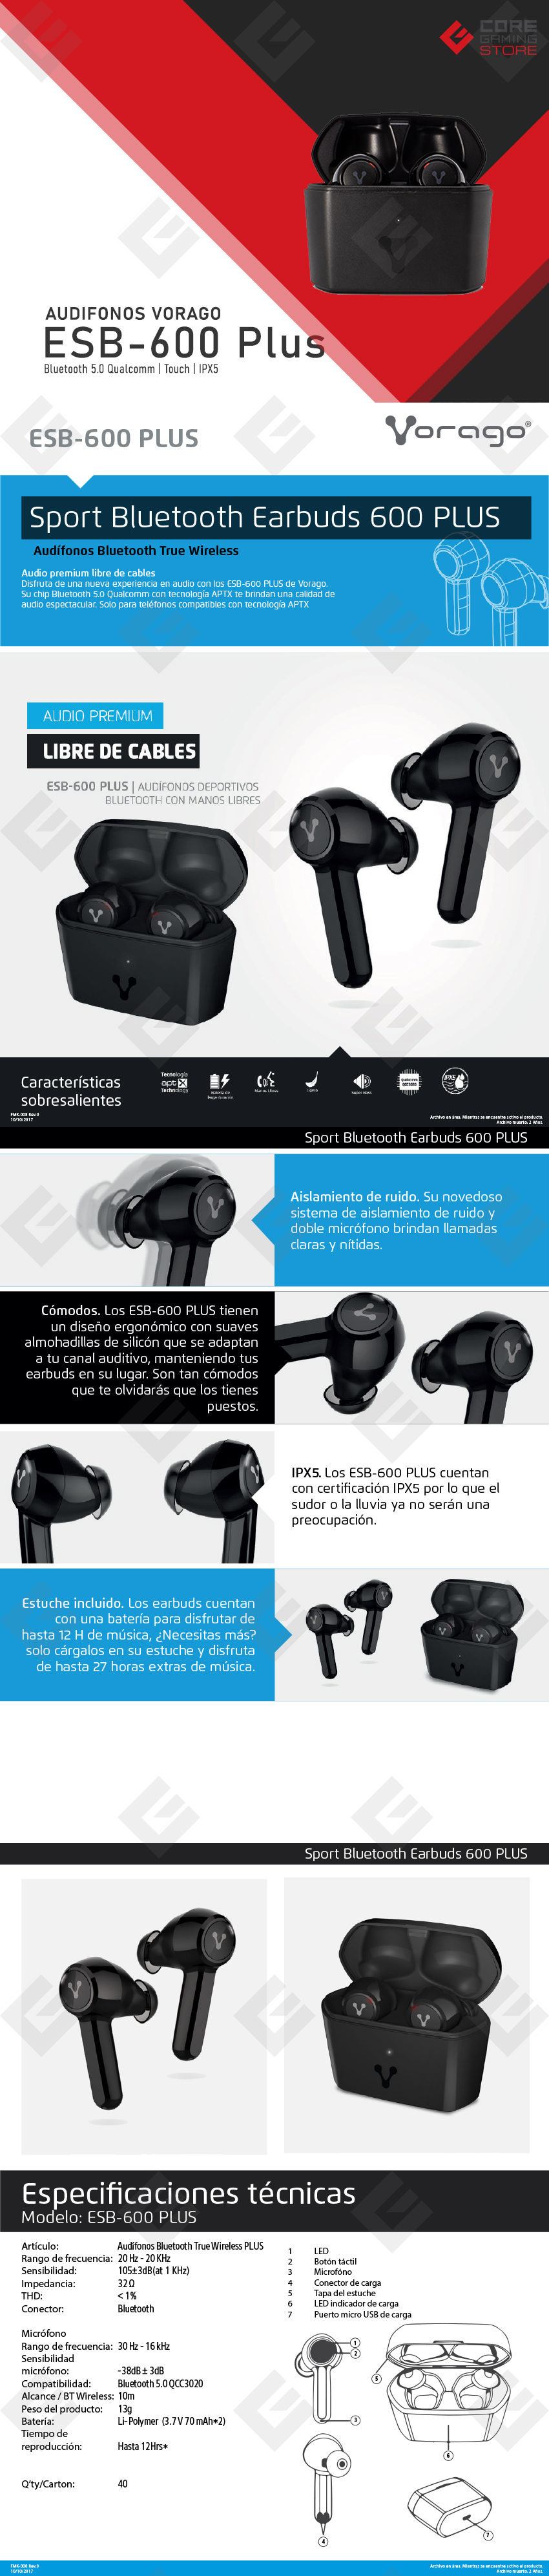 Audifonos Vorago ESB-600 PLUS | Bluetooth 5.0 Qualcomm | TWS | IPX5 | Estuche de carga